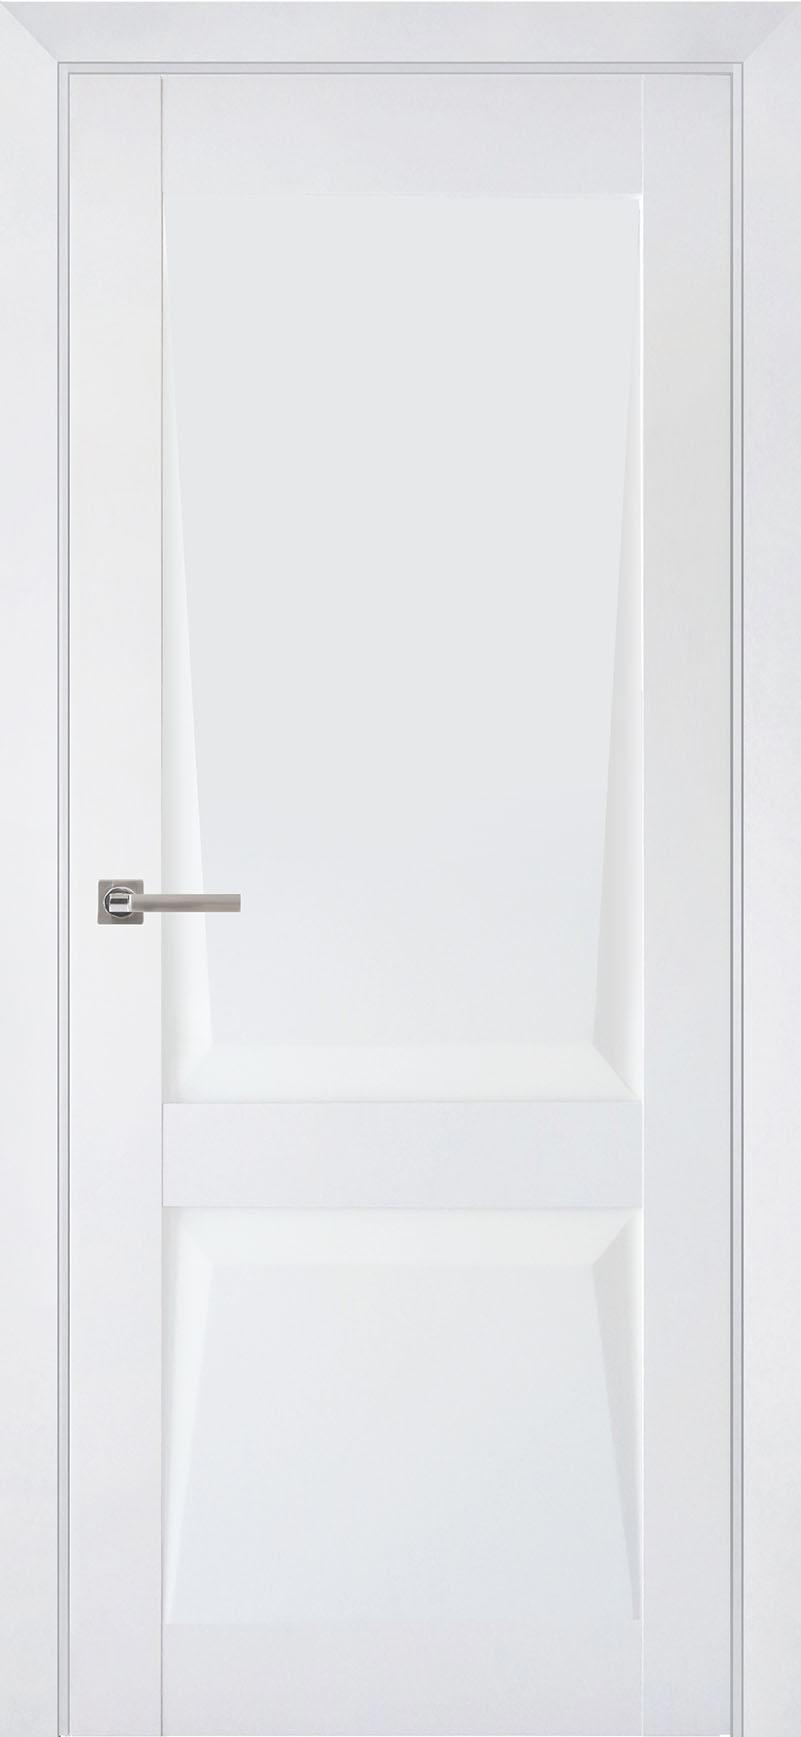 90903210 Межкомнатная дверь Перфекто 101 глухая без замка и петель в комплекте 200x80см белый STLM-0420036 UBERTURE